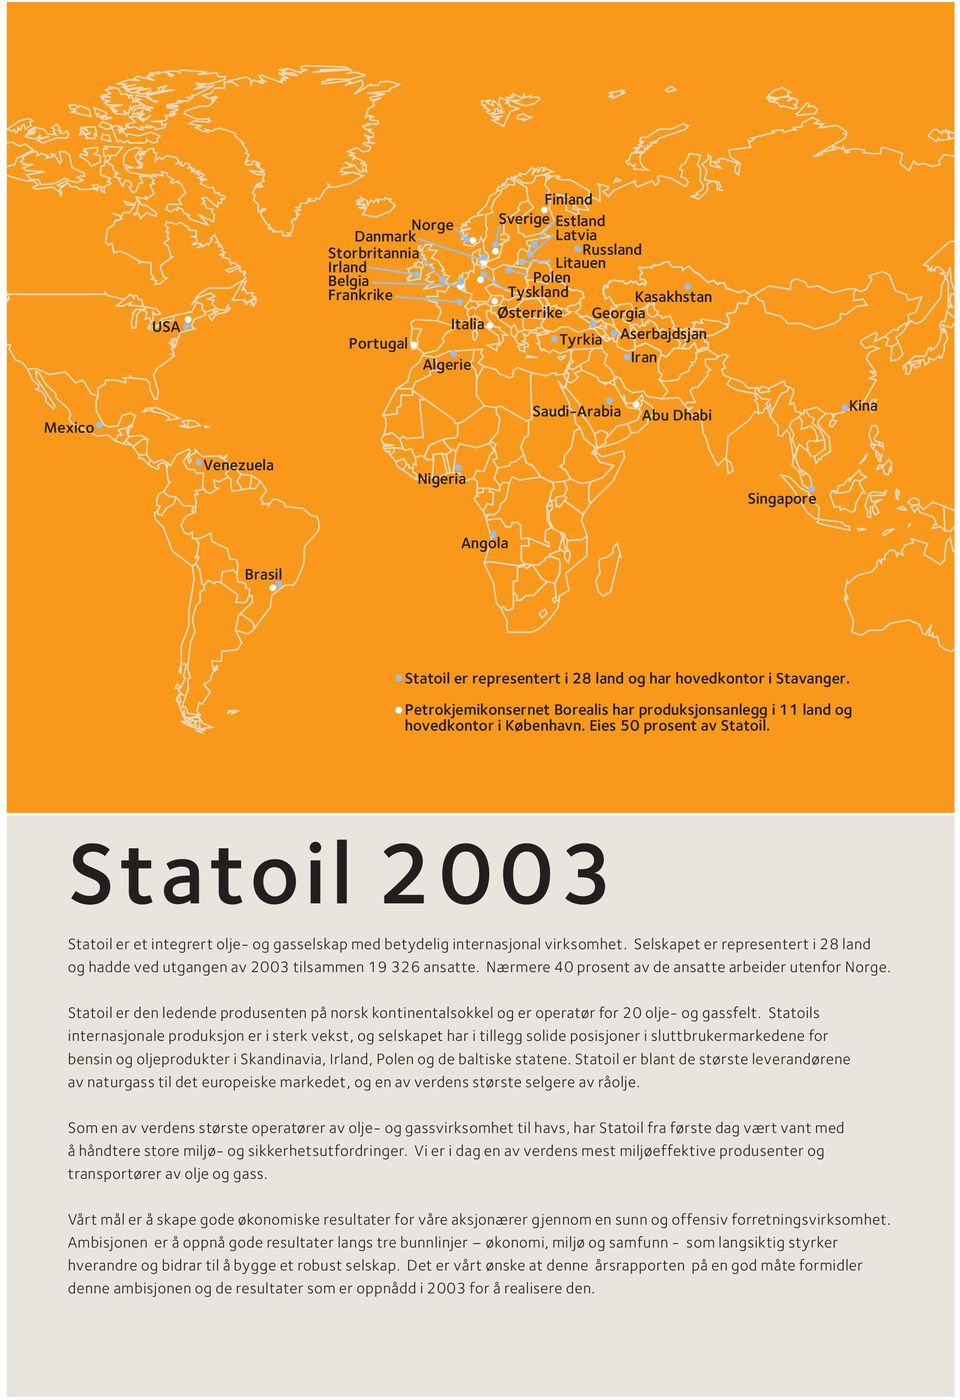 Petrokjemikonsernet Borealis har produksjonsanlegg i 11 land og hovedkontor i København. Eies 50 prosent av Statoil.